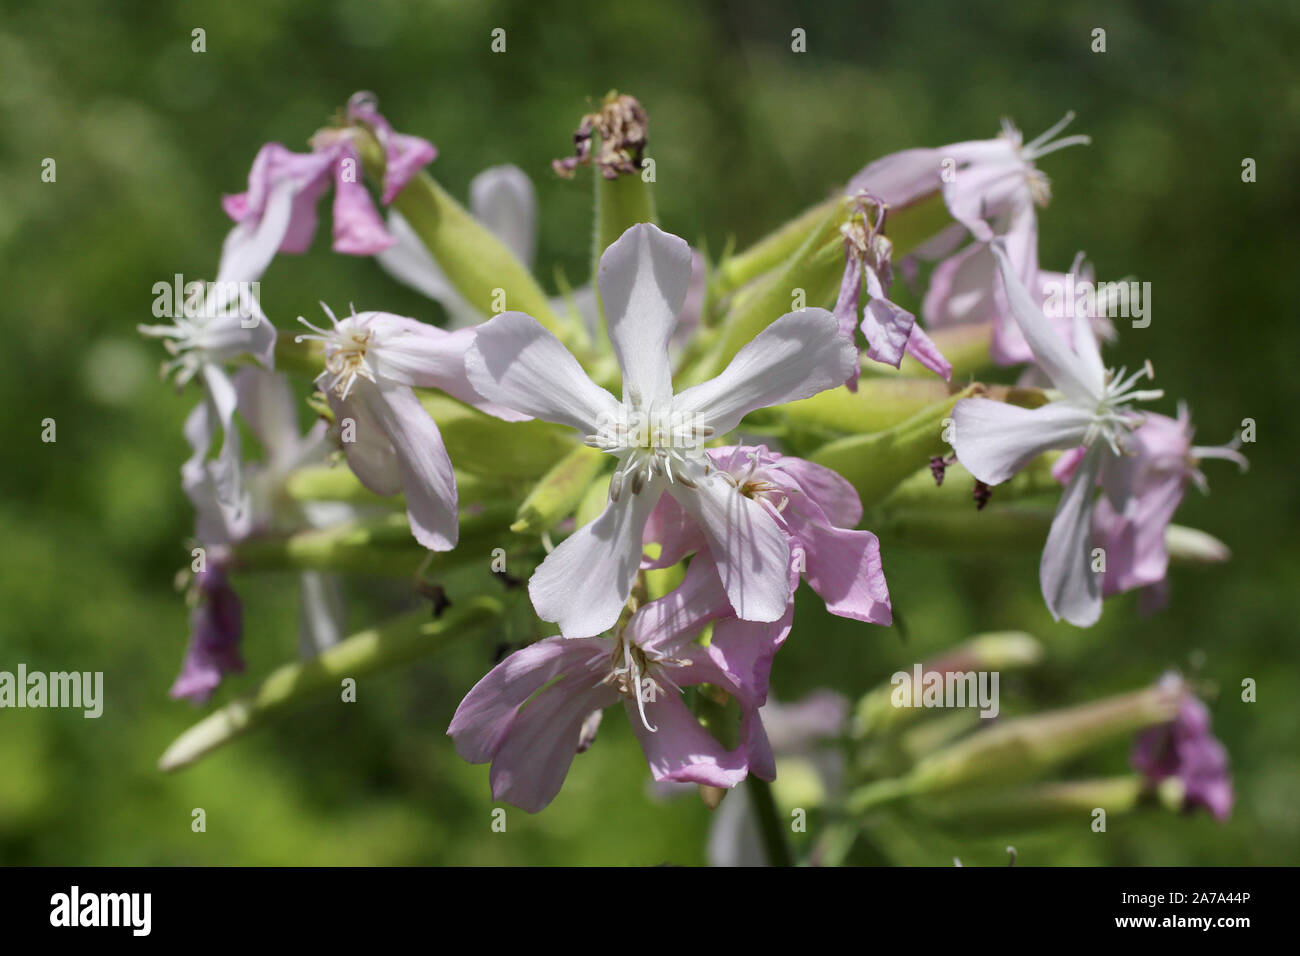 Saponaria officinalis - wild flower Stock Photo